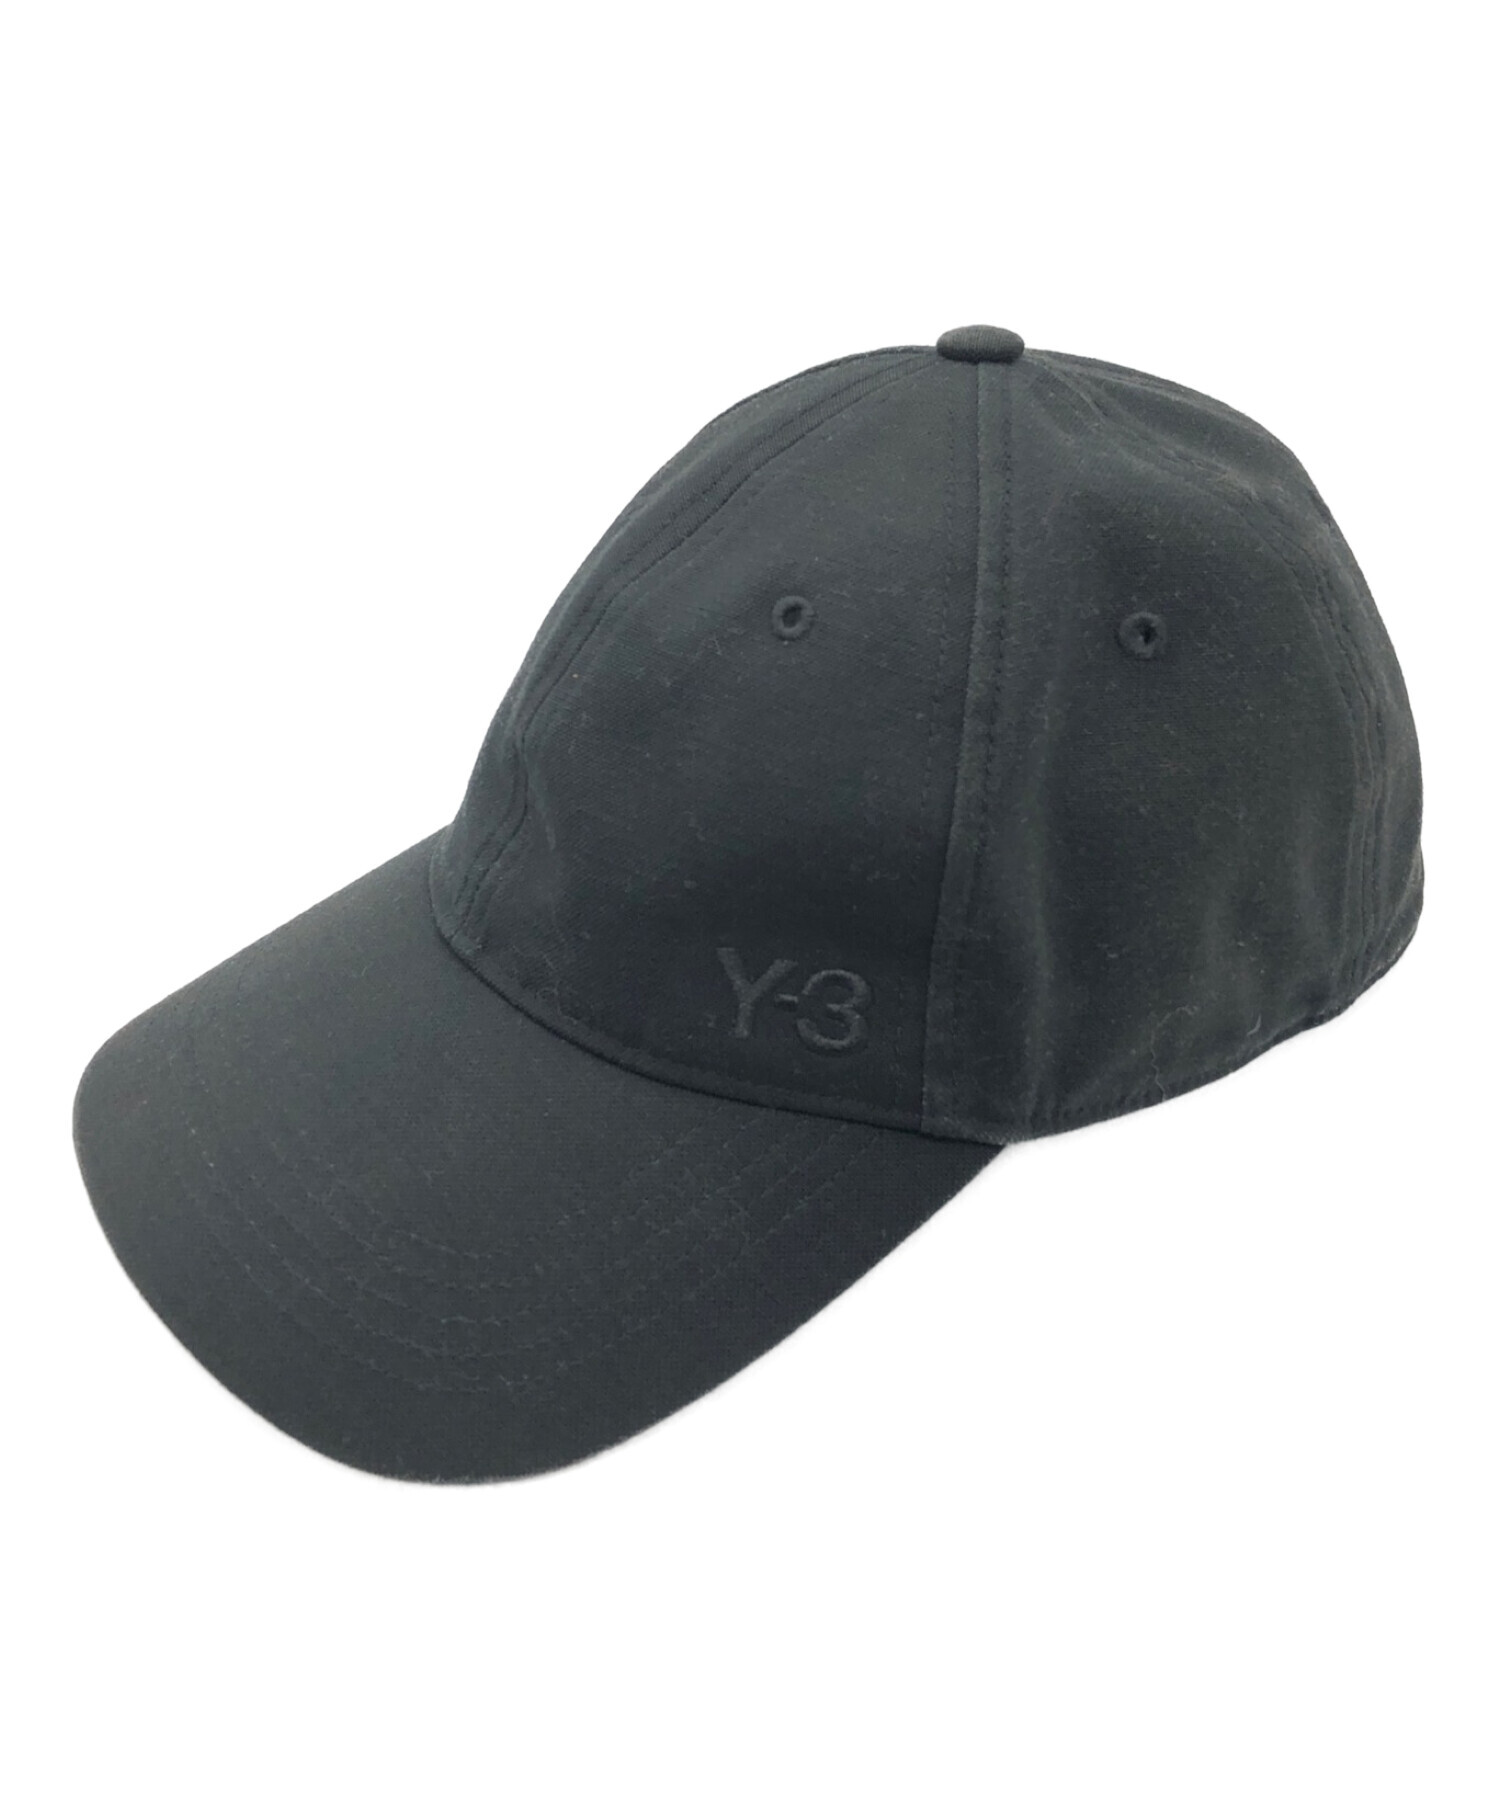 Y-3 (ワイスリー) ロゴ刺繍キャップ ブラック サイズ:58